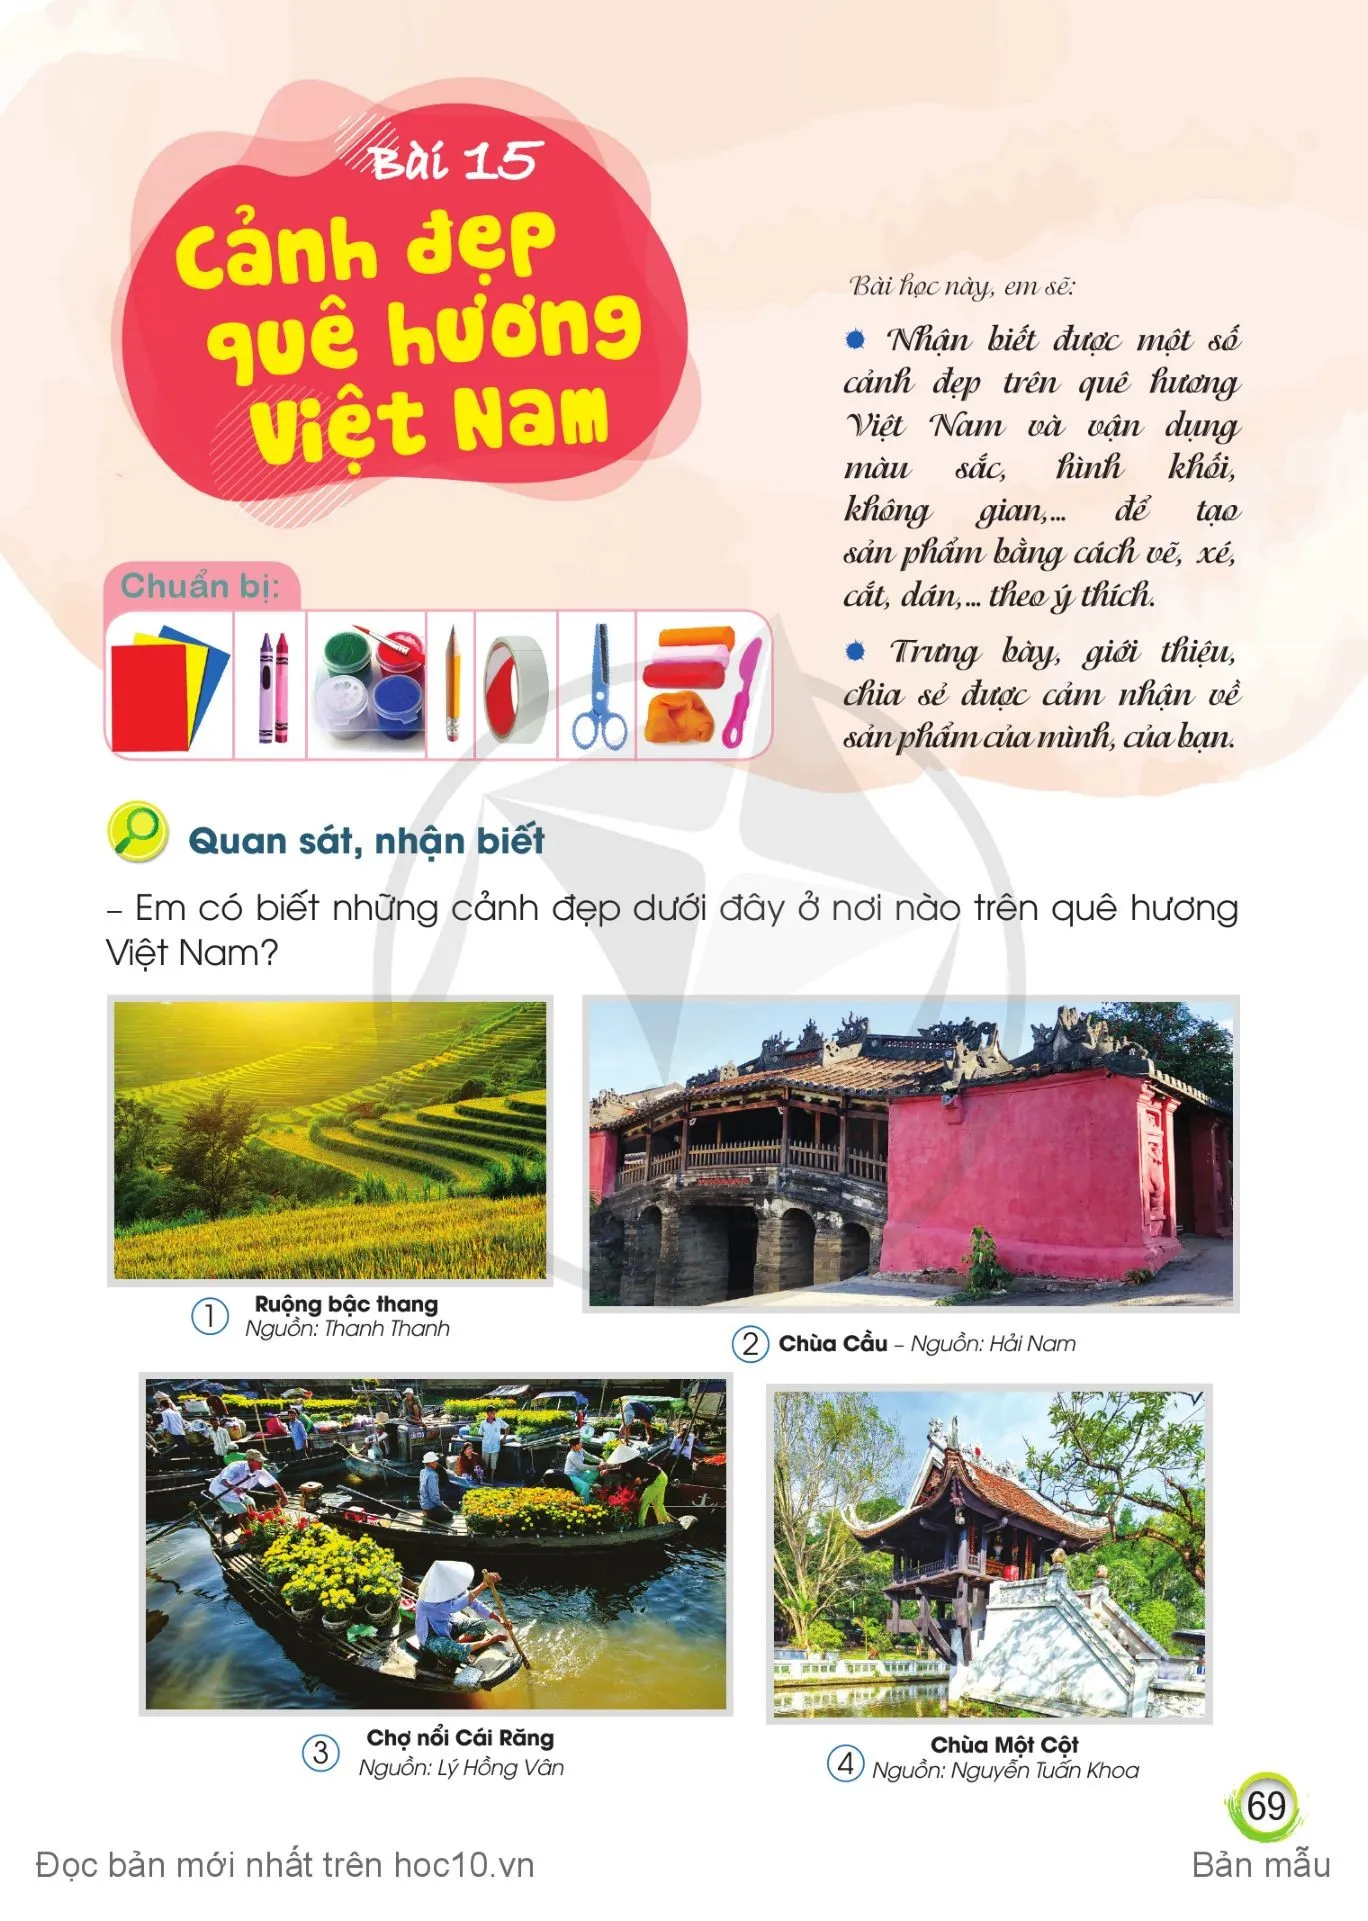 Bài 15: Cảnh đẹp quê hương Việt Nam